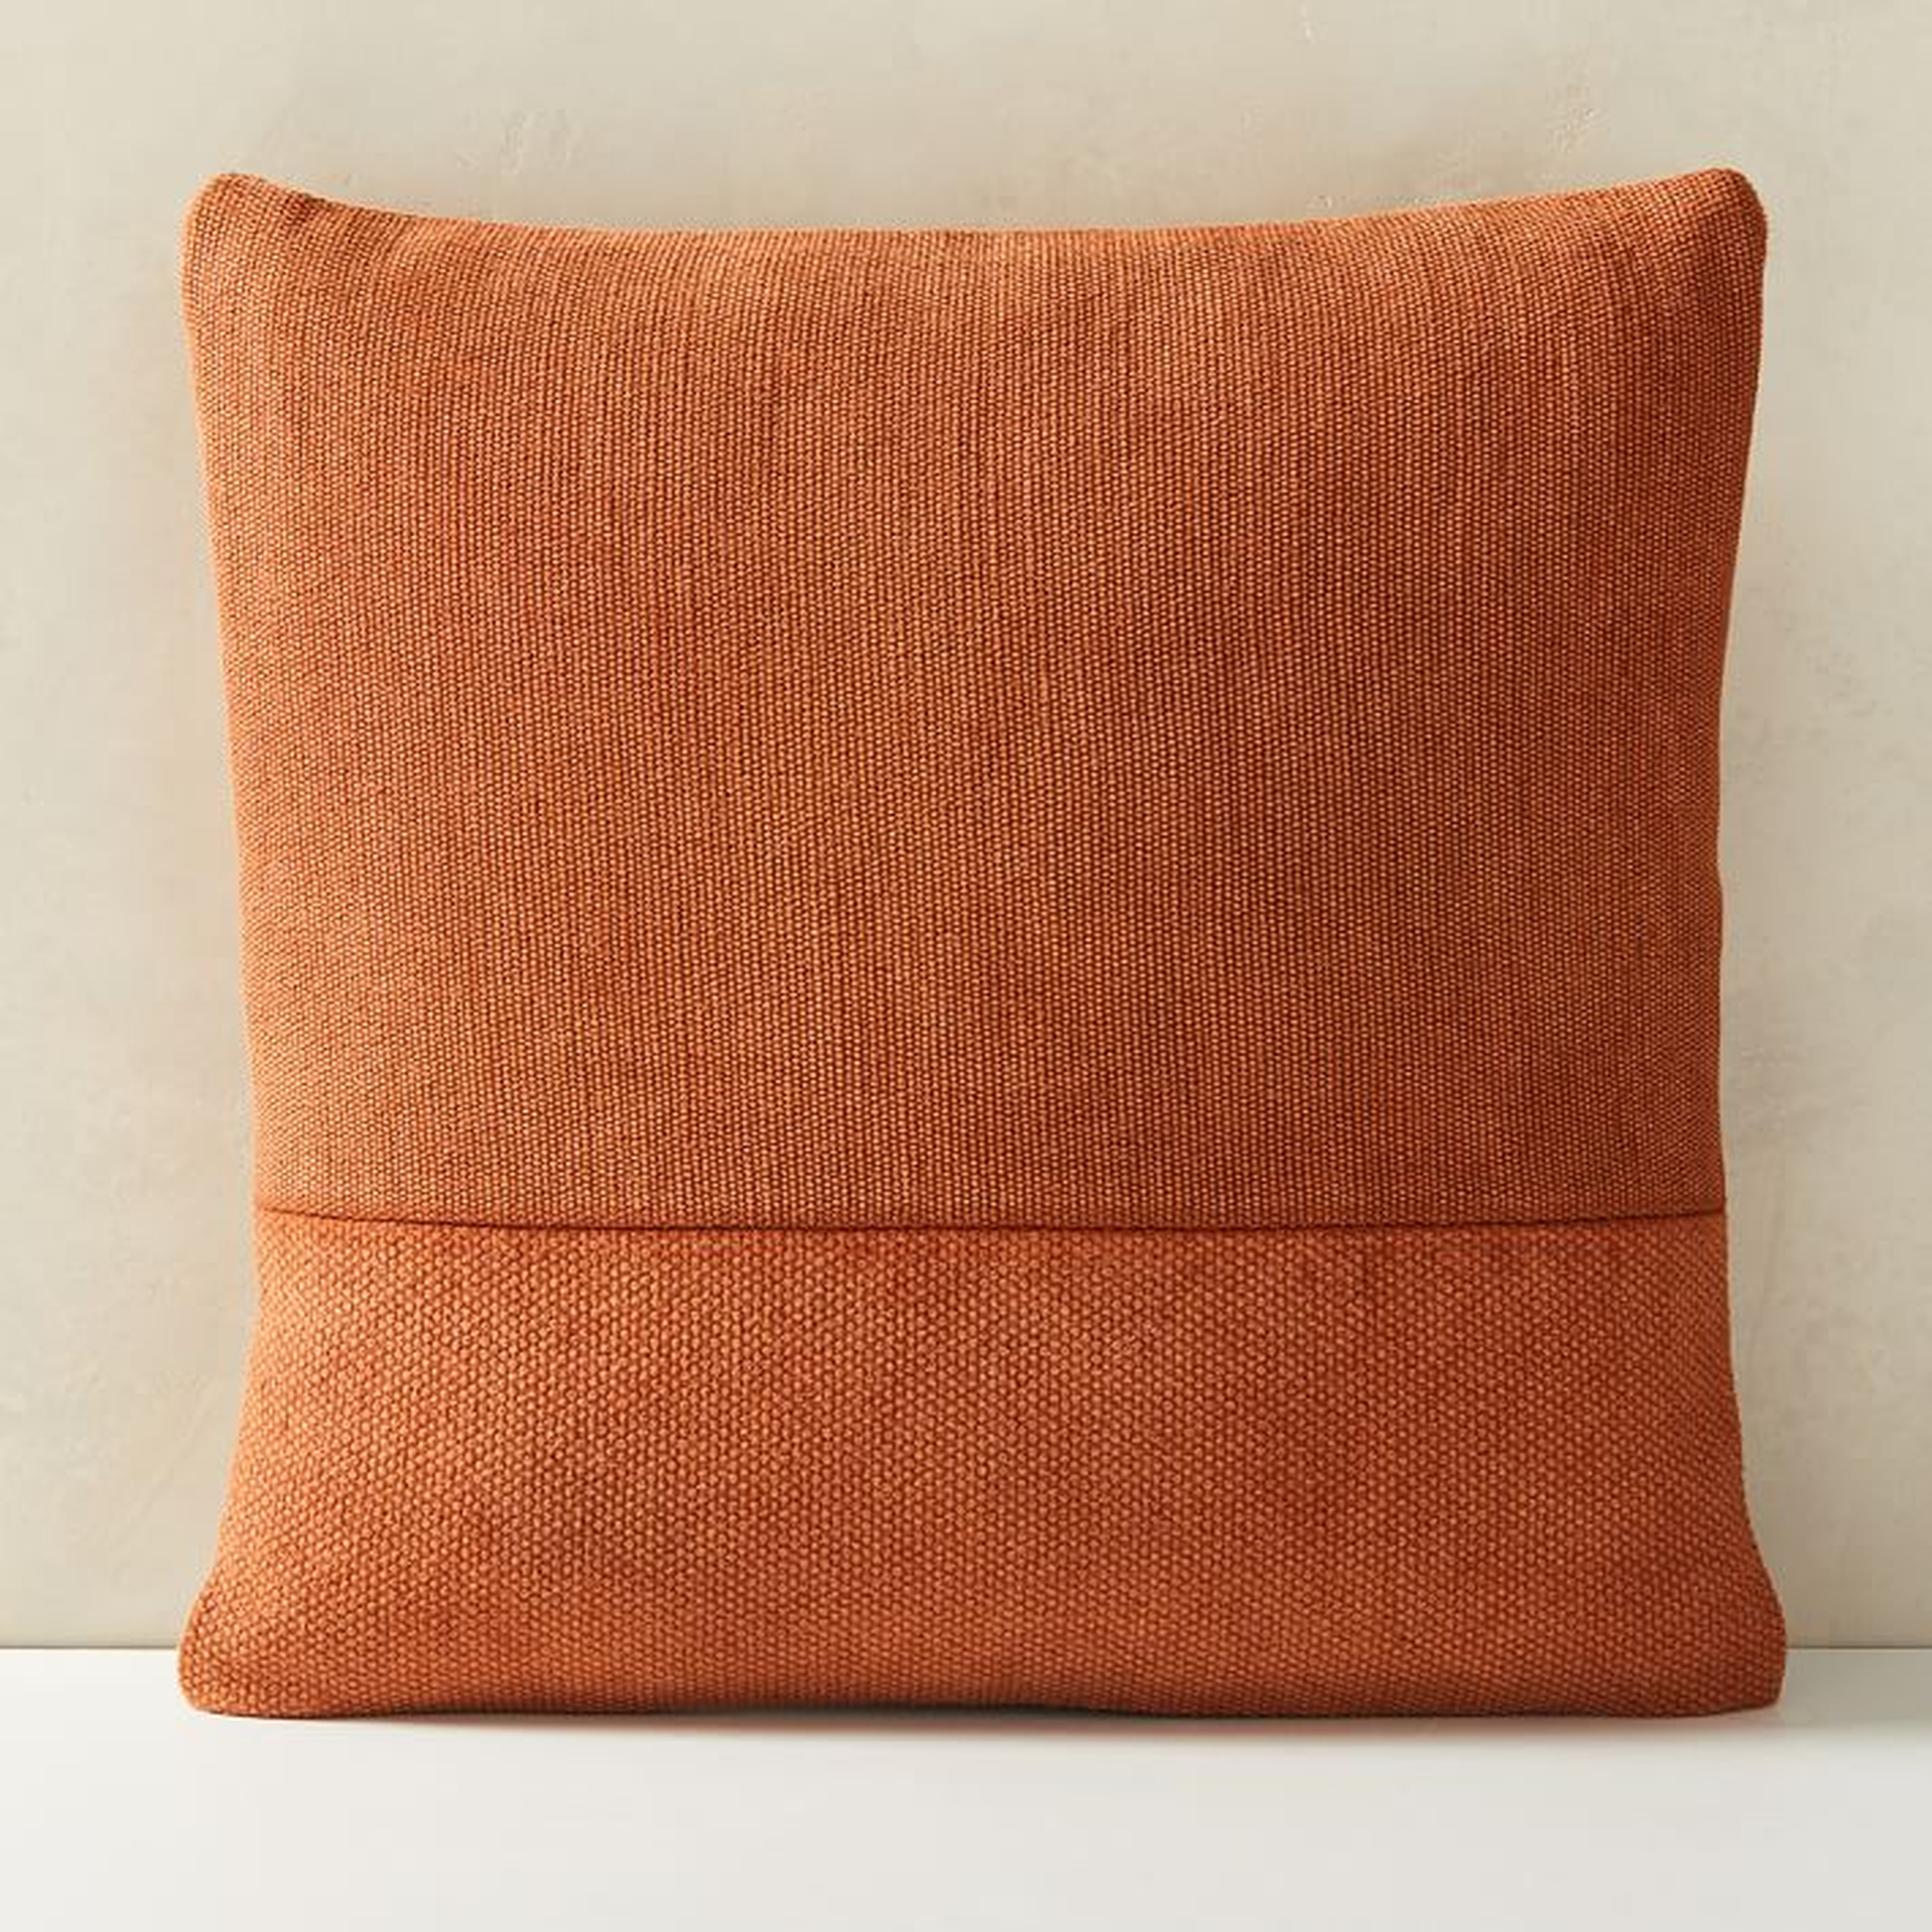 Cotton Canvas Pillow Covers, copper rust - West Elm